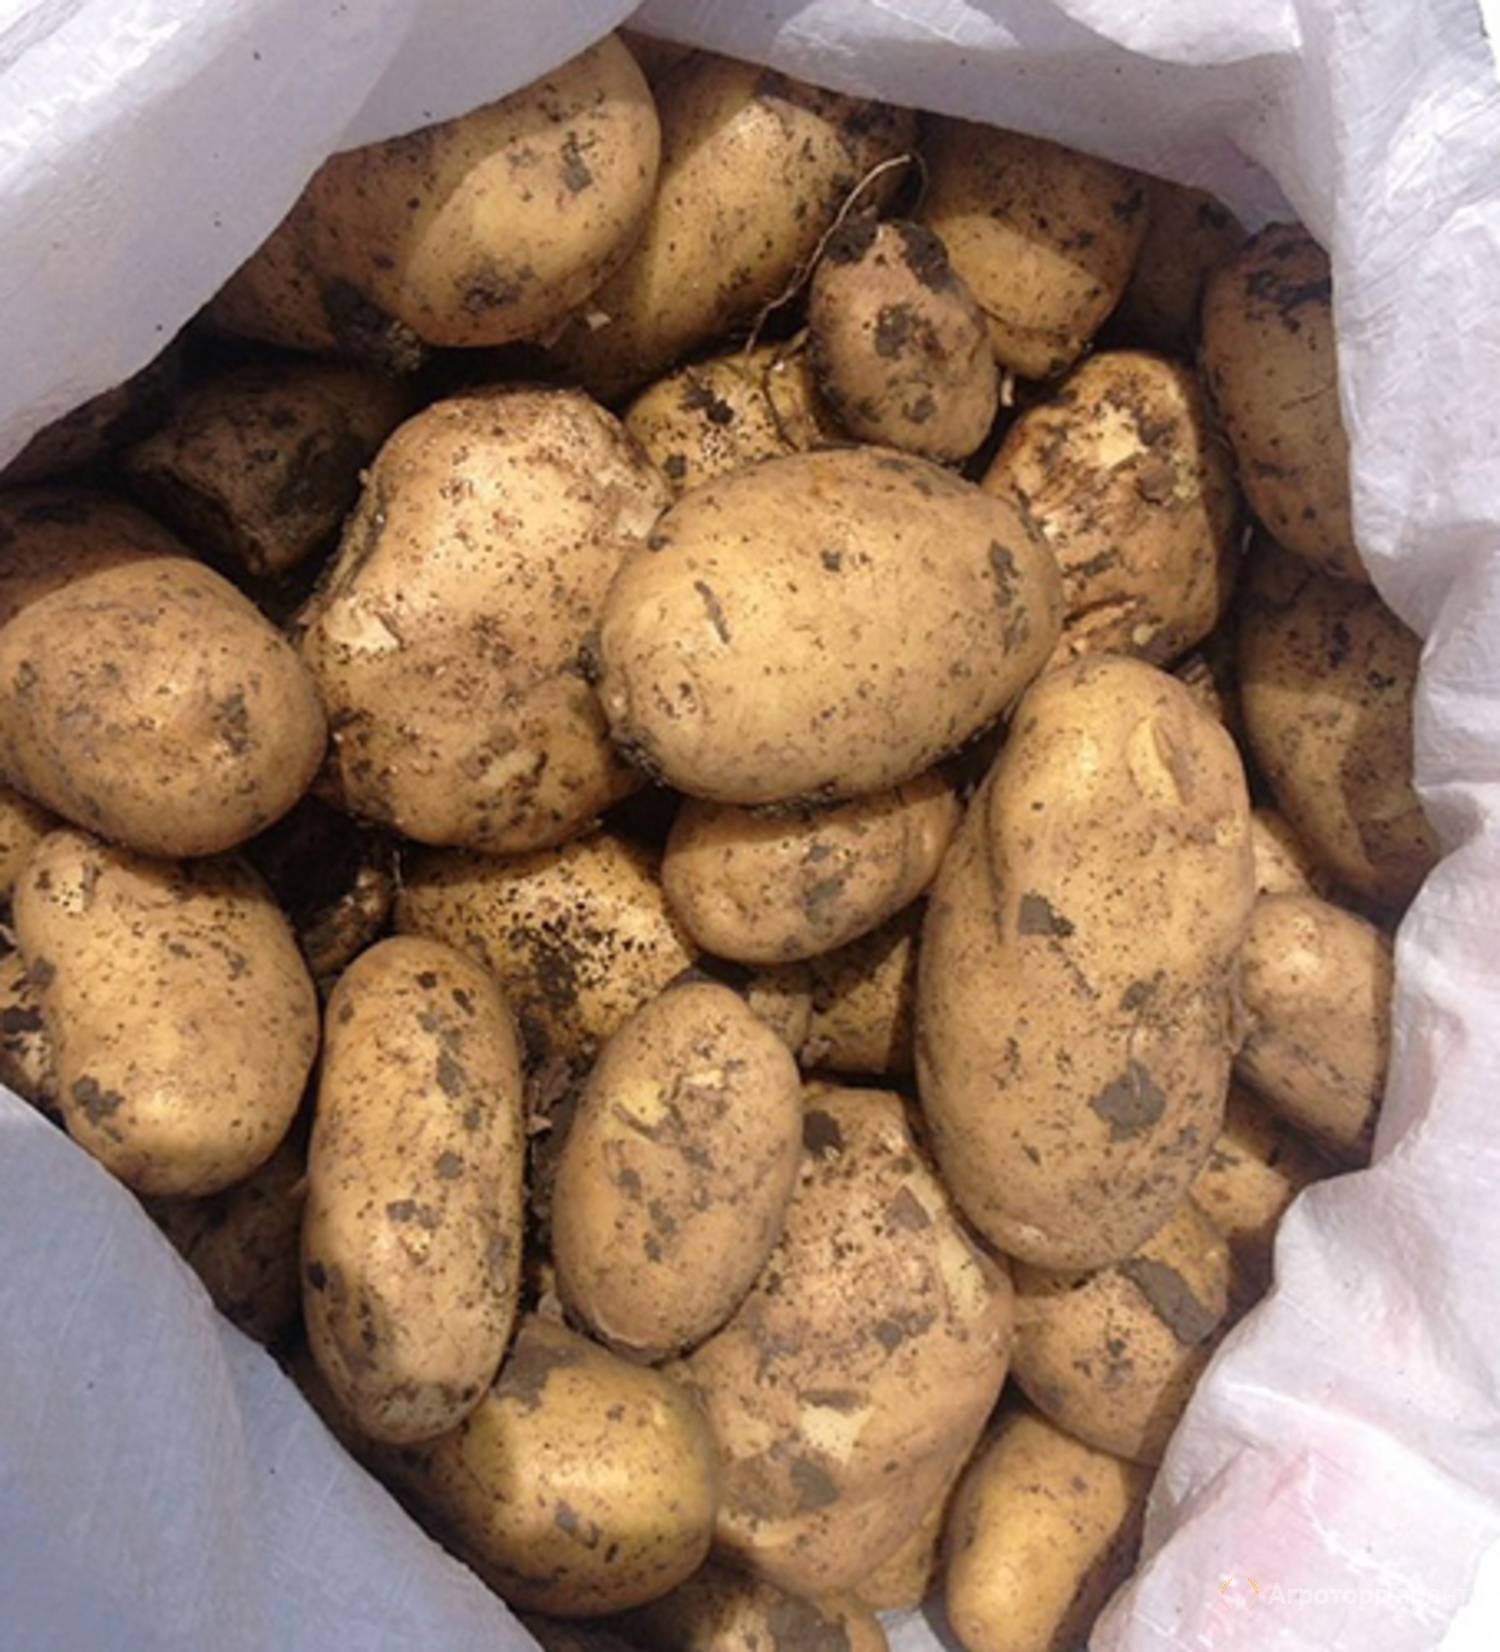 Сорт картофеля импала: описание и характеристика сорта с высокими вкусовыми качествами